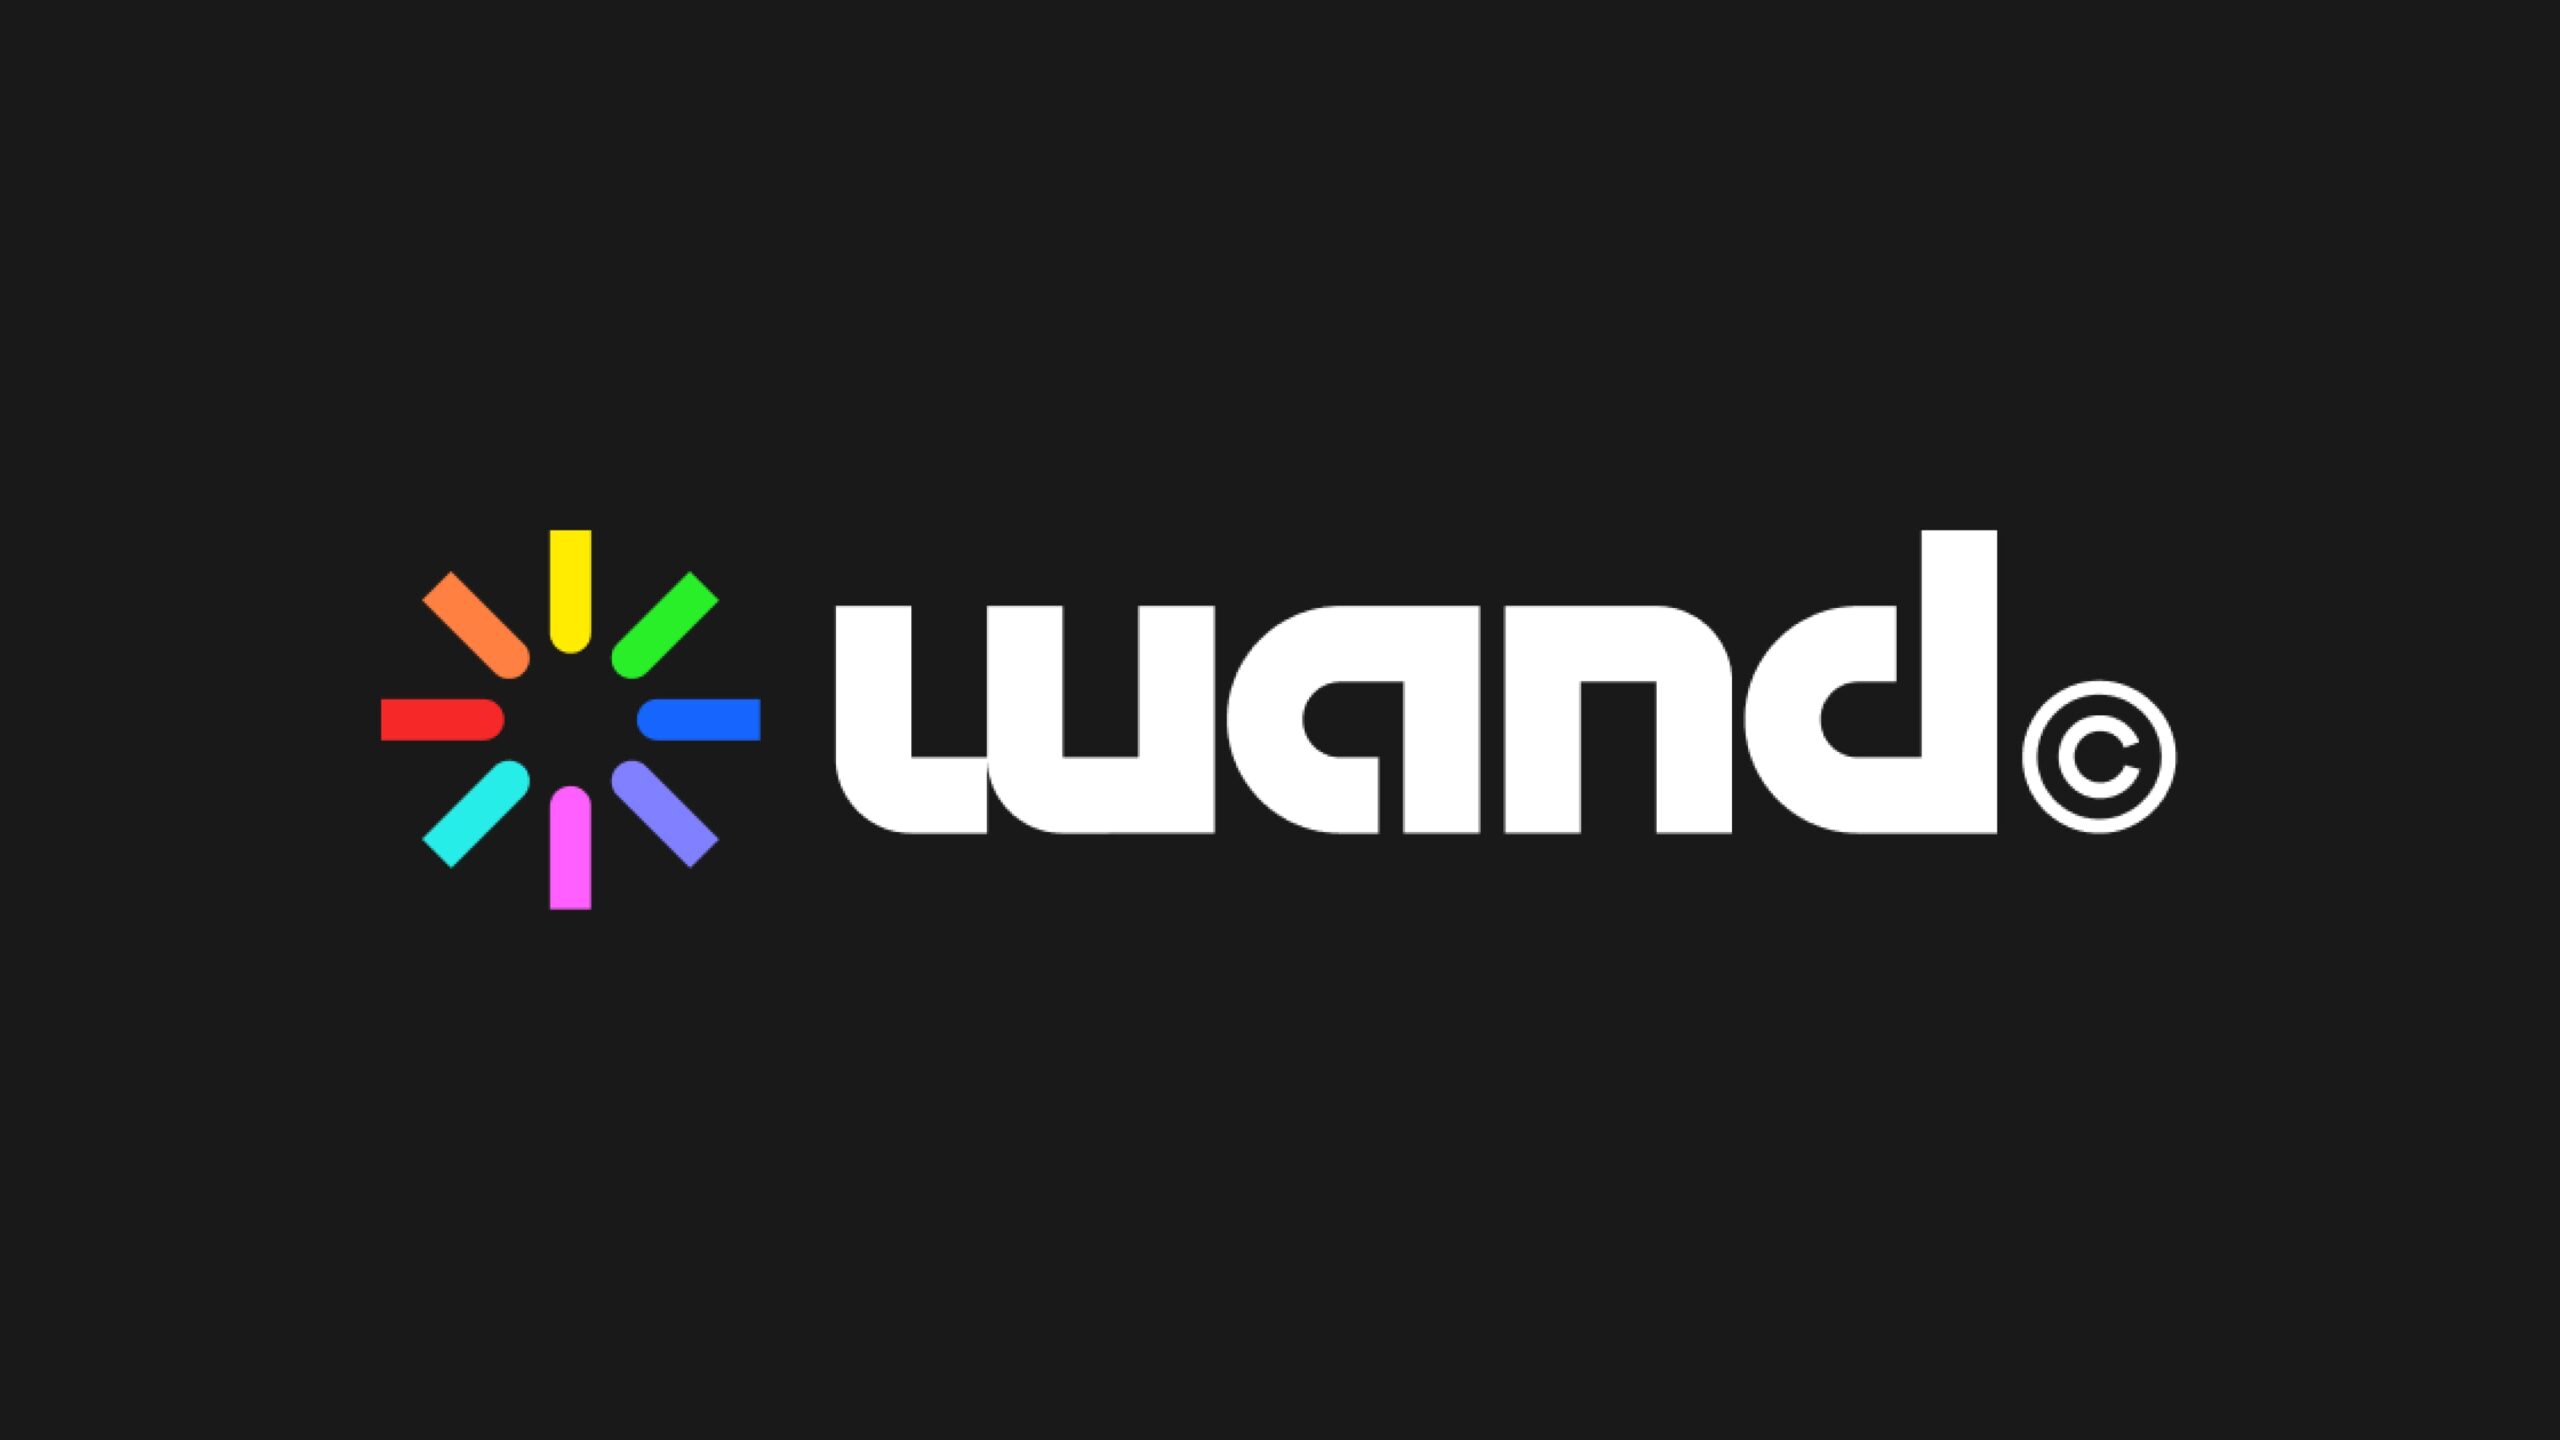 Wand.appがAIを利用した創造的ツールを拡大するために420万ドルを調達